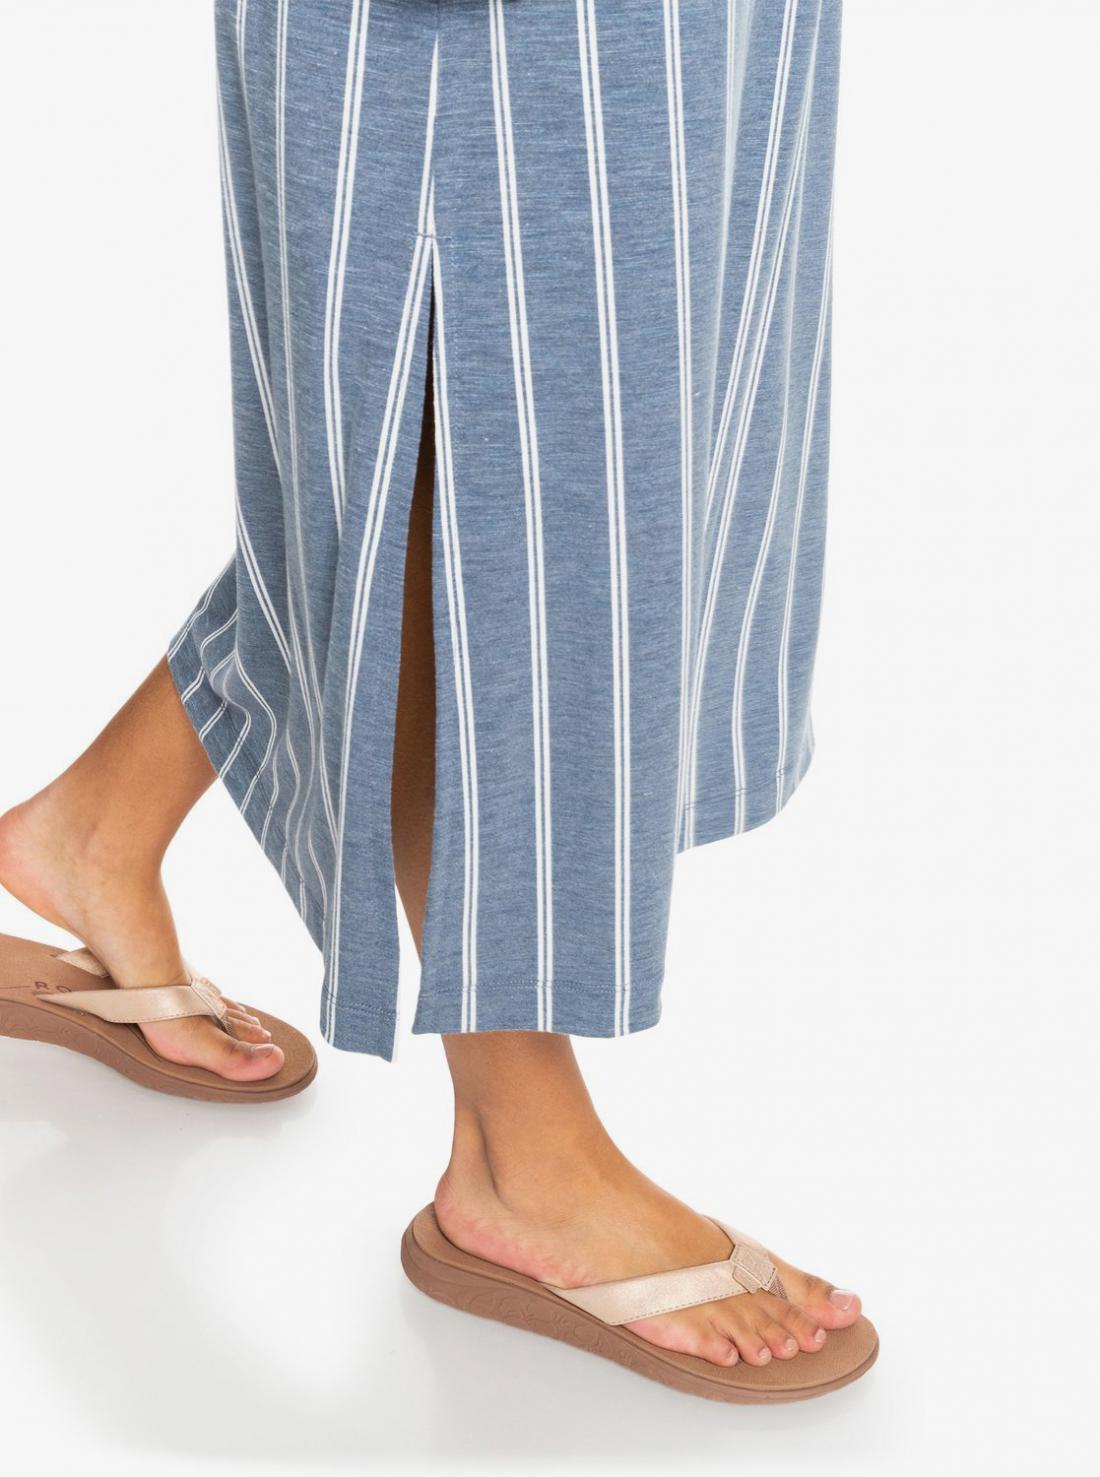 Roxy Women's Vista Sandal Flip-Flop